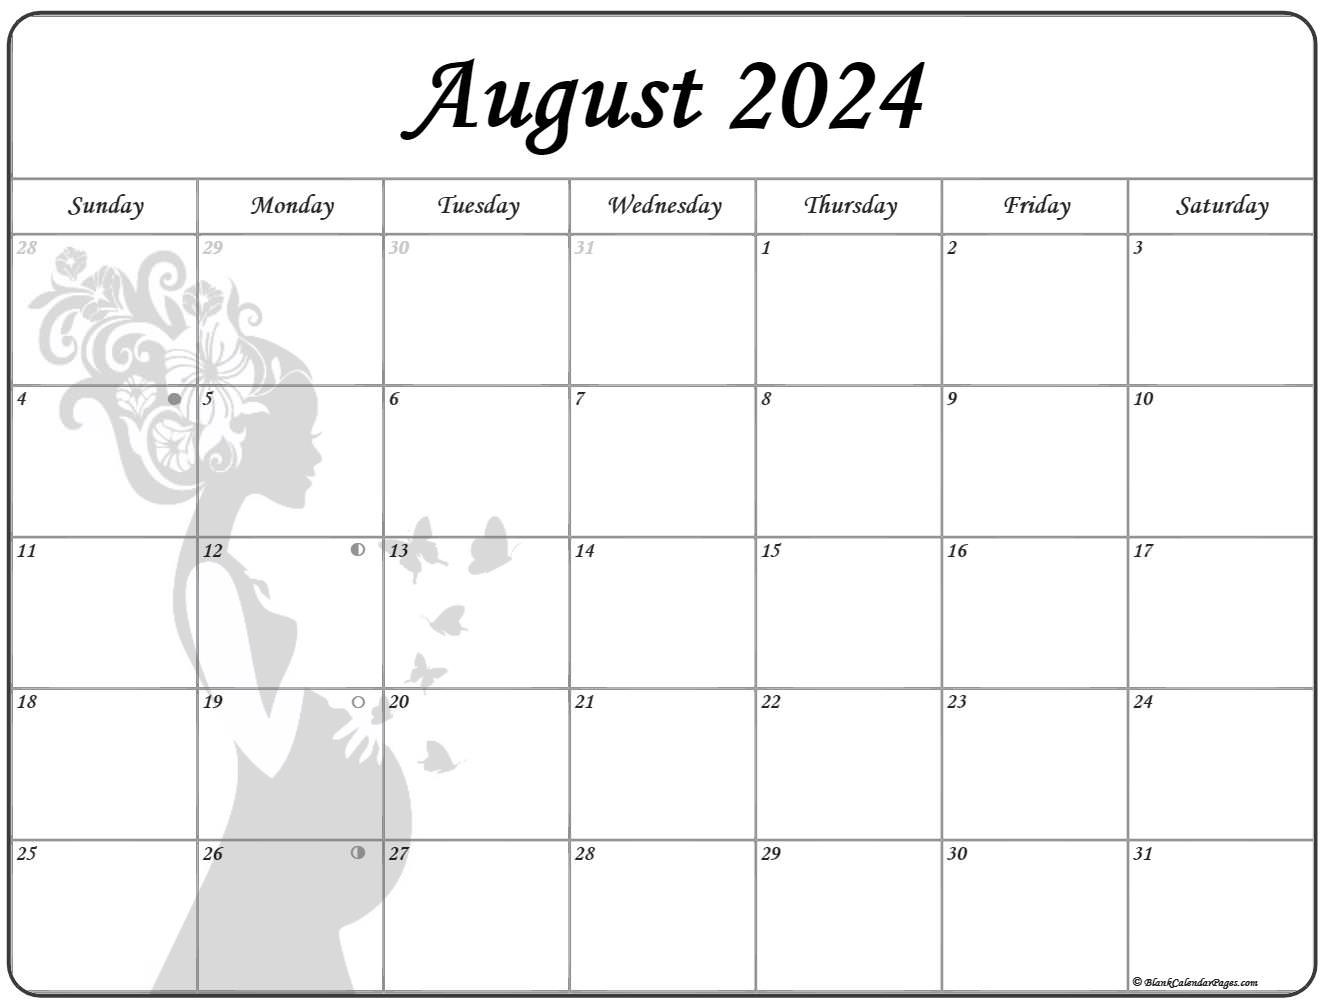 August 2020 Pregnancy Calendar | Fertility Calendar